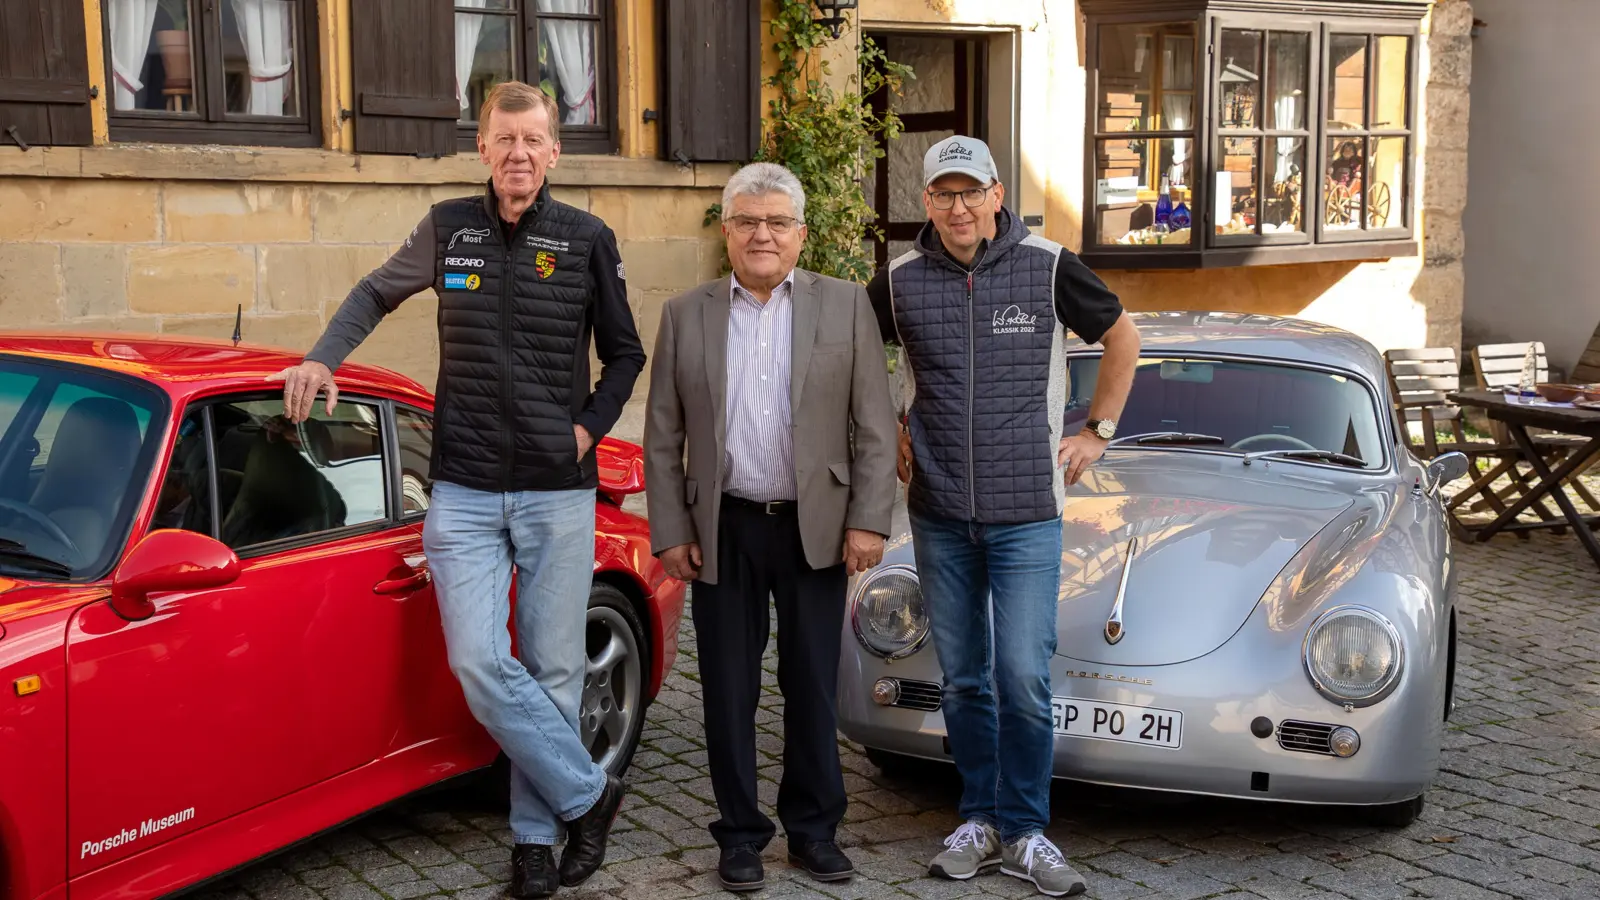 Rallye-Weltmeister und Namensgeber Walter Röhrl (links) hat mit Organisator Peter Göbel (rechts) schon mal zur Vorbereitung in Rothenburg vorbeigeschaut und Bürgermeister Kurt Förster getroffen. (Foto: Verlag Delius Klasing/O.v. Simon)